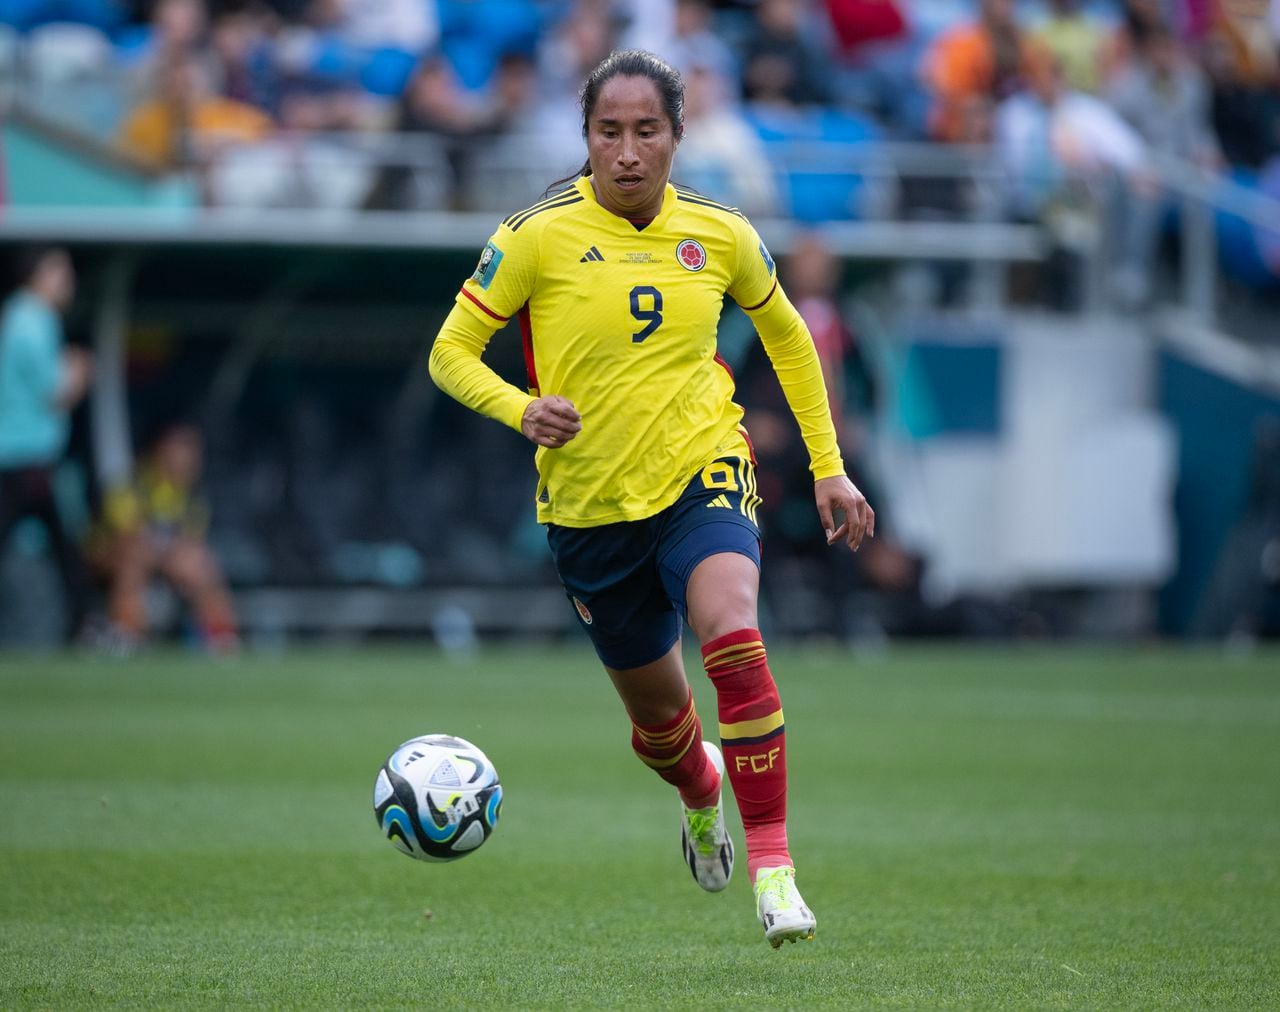 Mayra Ramírez, jugadora de la selección Colombia